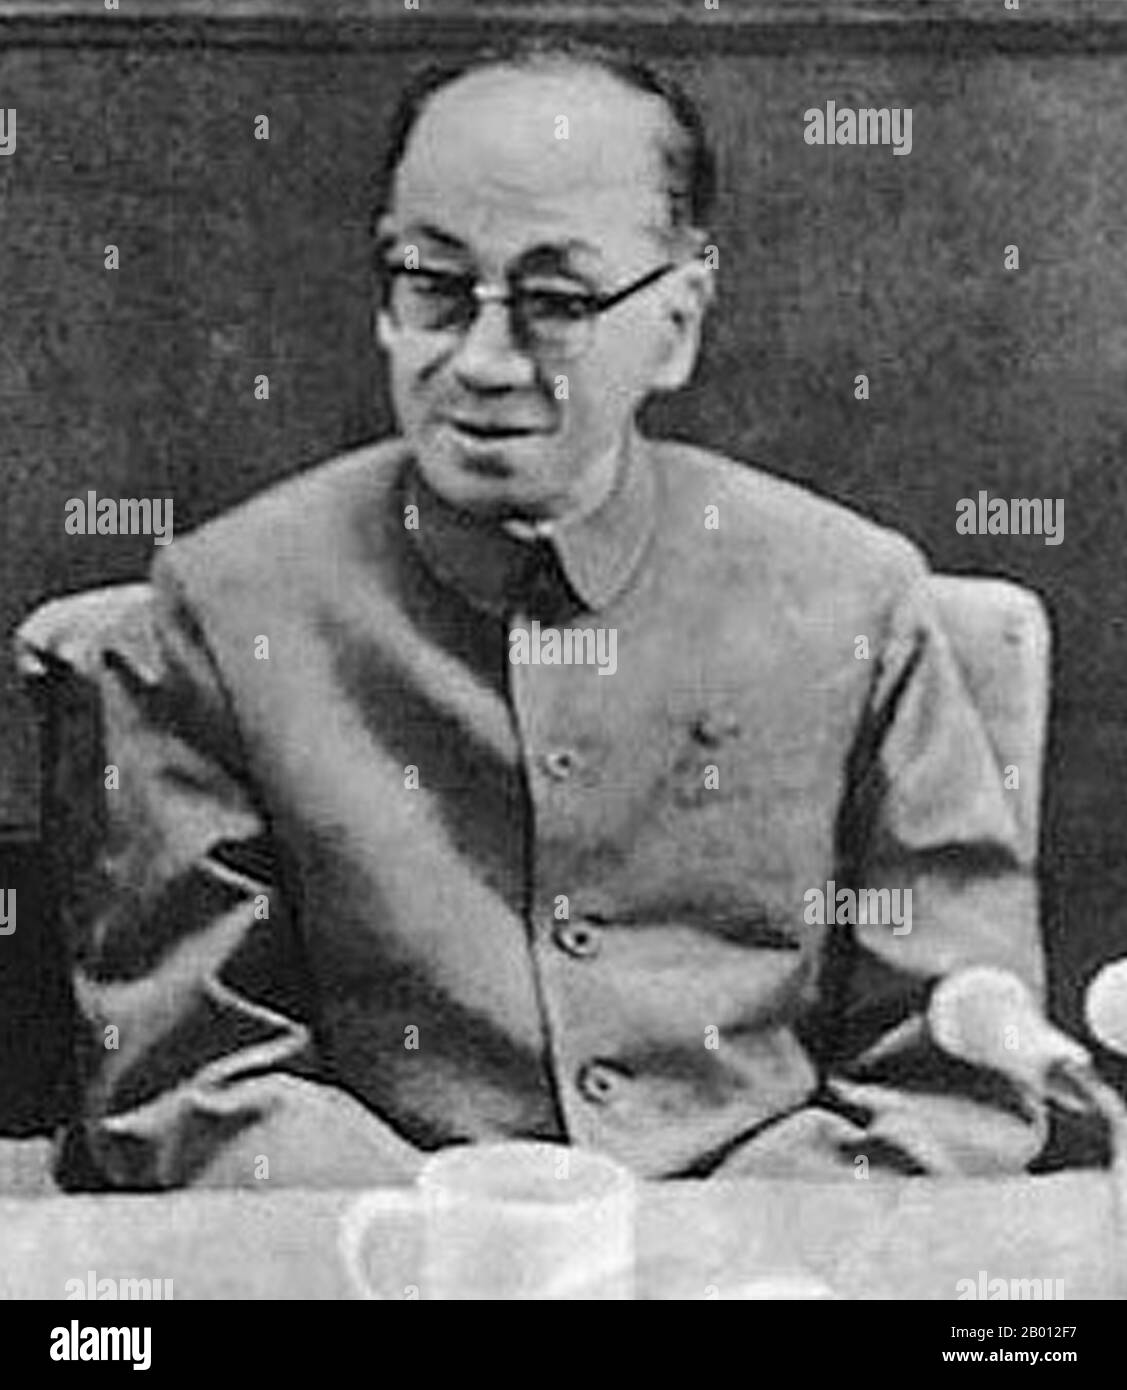 Cina: Kang Sheng (circa 1898–16 dicembre 1975), stretto socio di Mao Zedong e temuto poliziotto segreto. Kang Sheng (1898–16 dicembre 1975) ha supervisionato il lavoro dell'apparato di sicurezza e intelligence della Repubblica popolare cinese al culmine della rivoluzione culturale alla fine degli anni '60. Era un socio vicino di Mao Zedong ed è rimasto al o vicino al culmine del potere per i decenni. Dopo la sua morte, Kang Sheng fu accusato di condividere la responsabilità con il gruppo dei quattro per gli eccessi della rivoluzione culturale ed espulso postumo dal Partito comunista nel 1980. Foto Stock